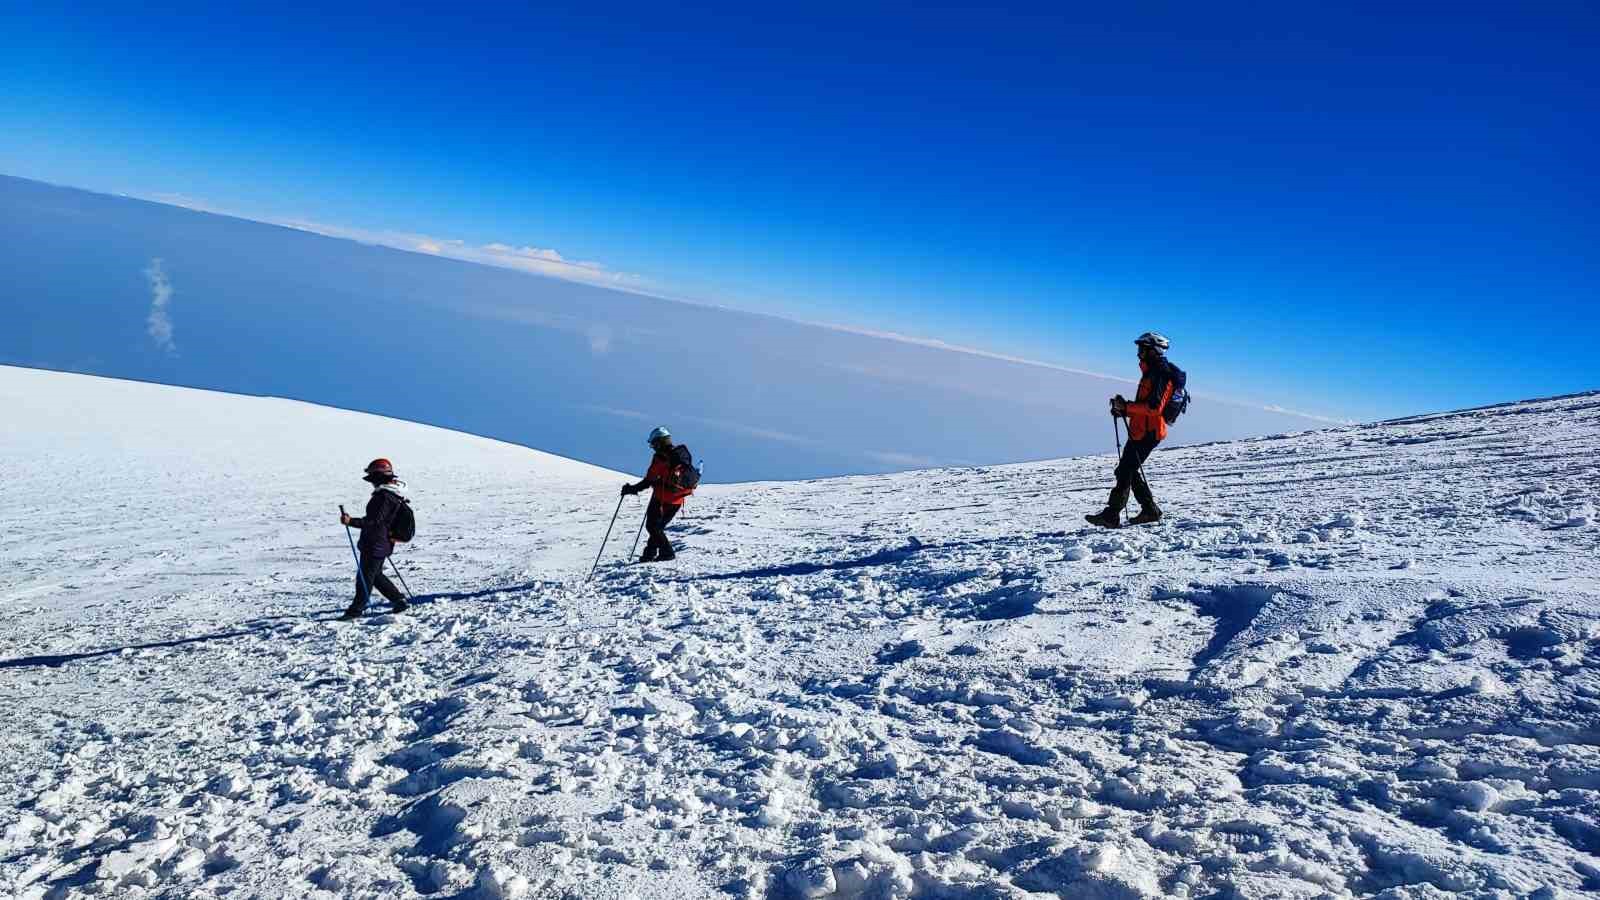 Vanlı dağcılar Türkiye’nin en yüksek dağı olan Ağrı Dağı’na tırmandı